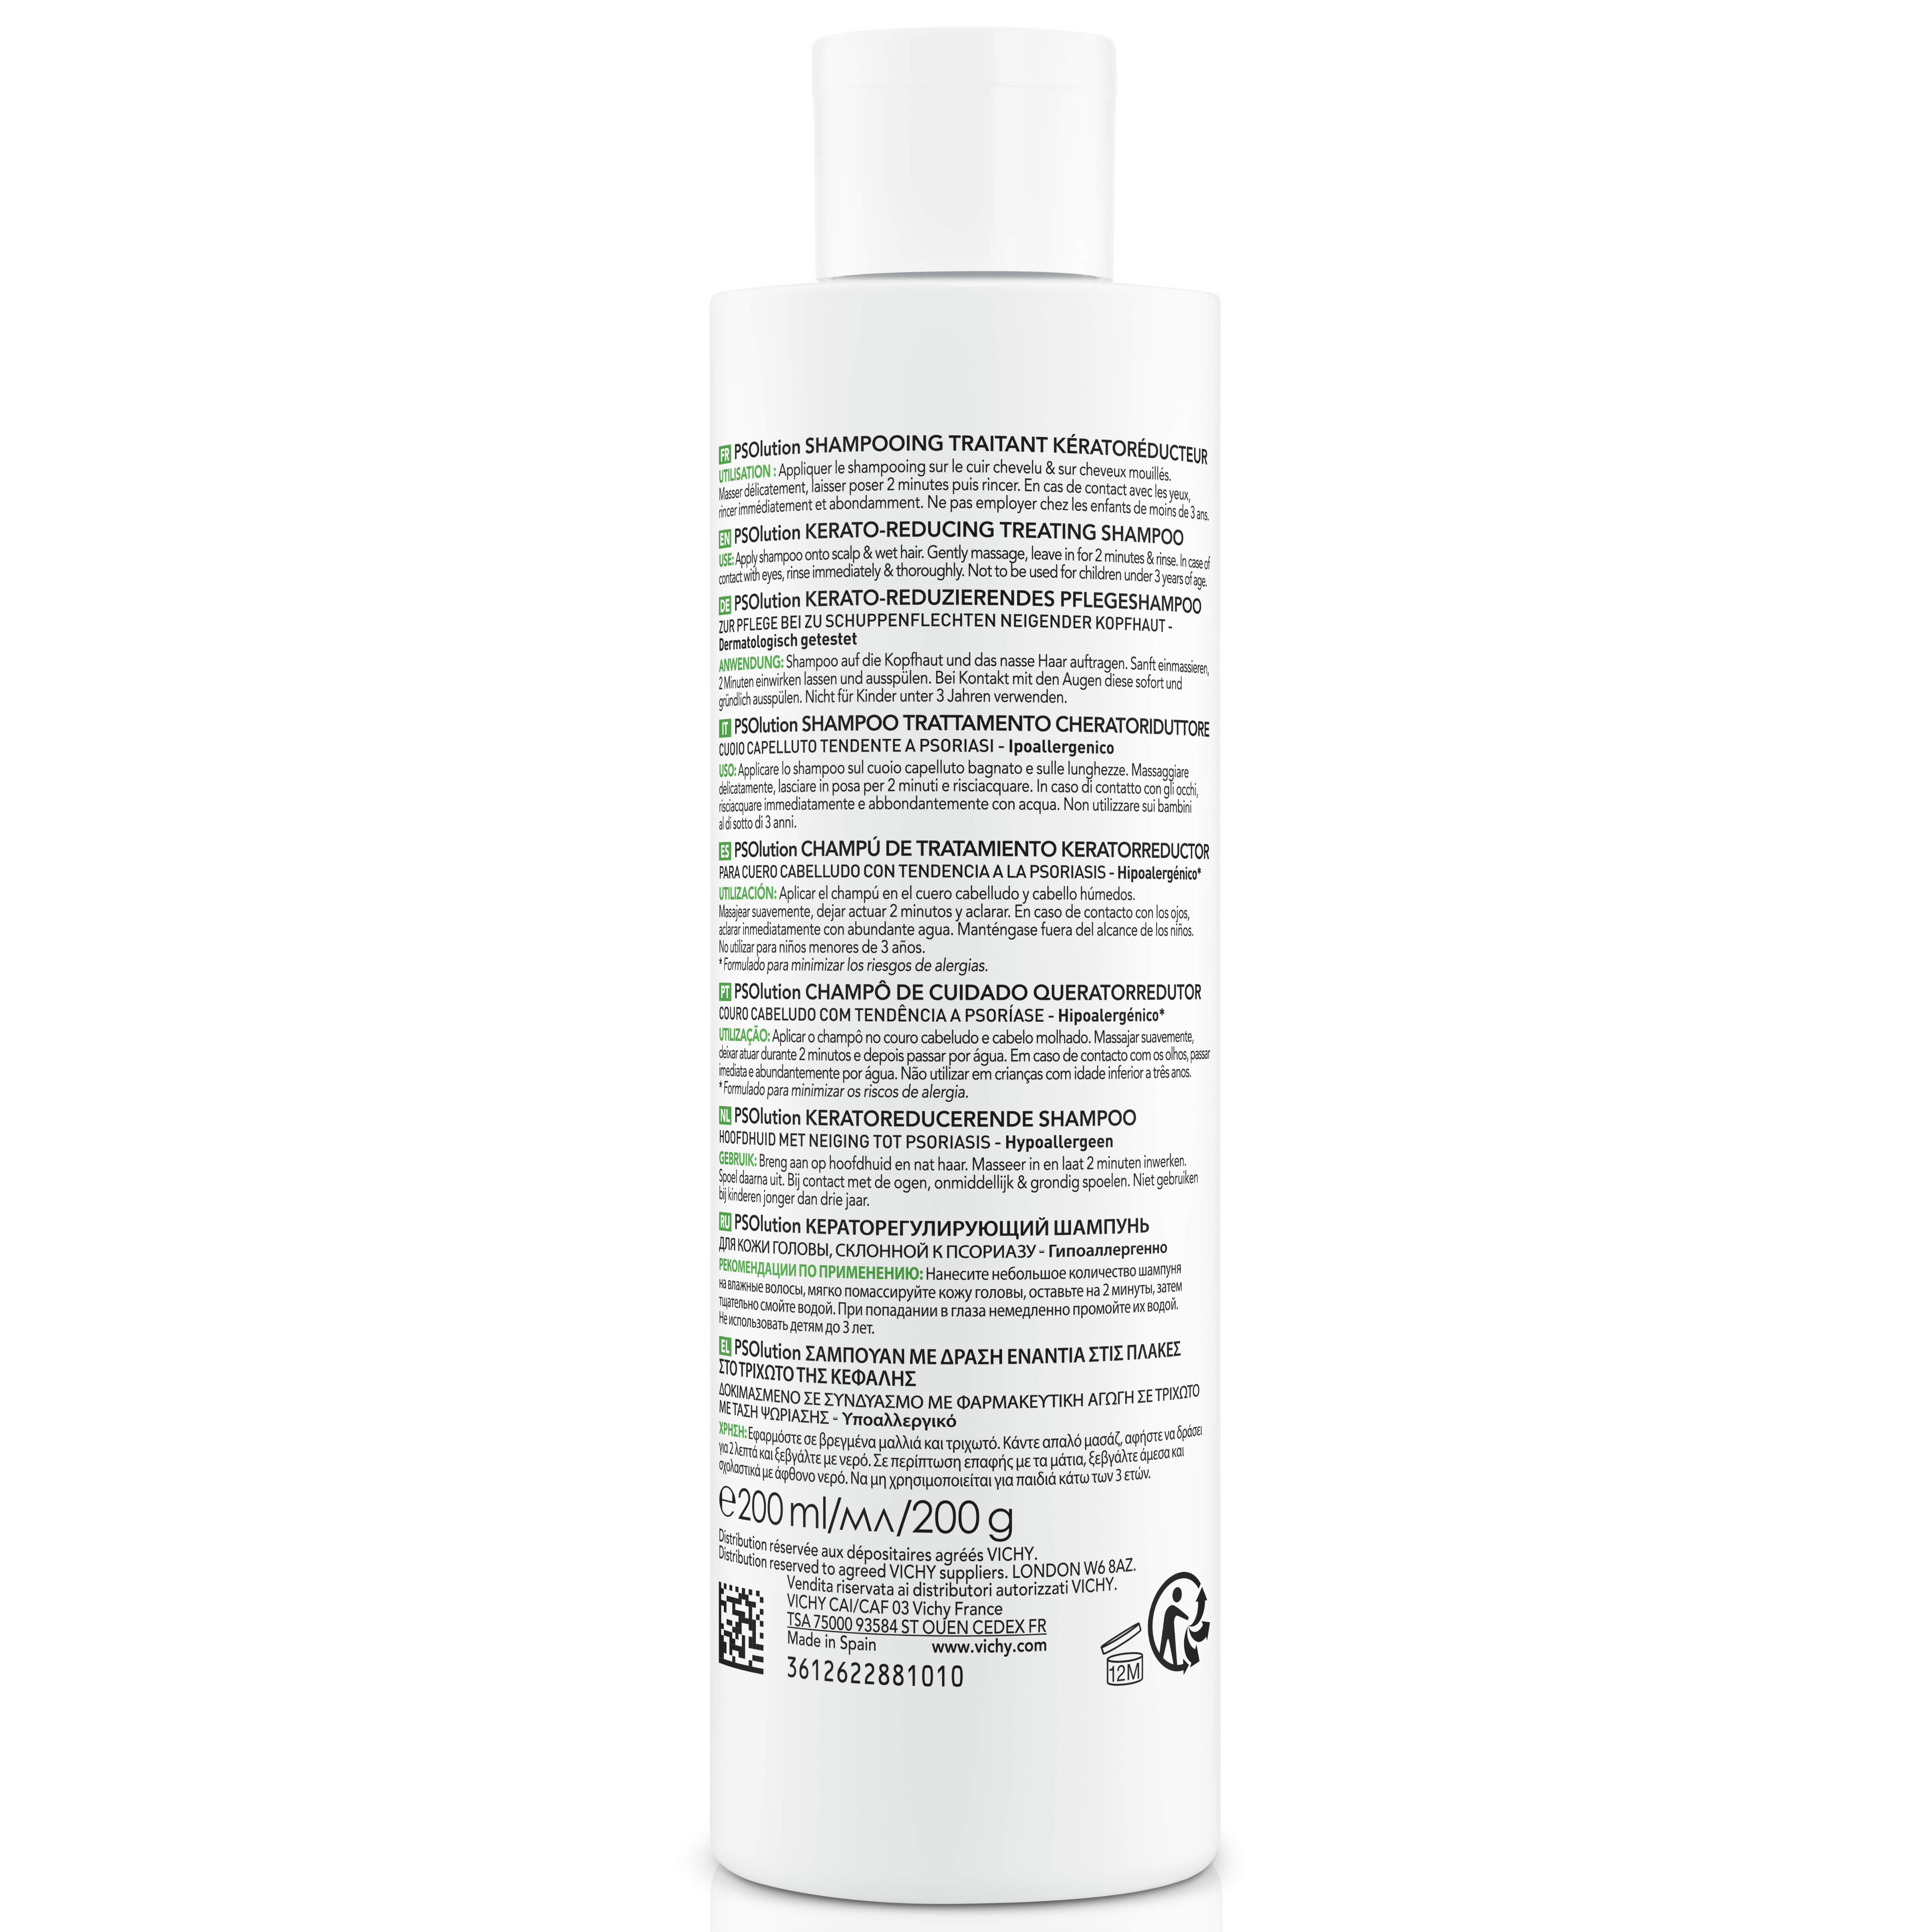 Кератолитический шампунь Vichy Dercos PSOlution Kerato-Reducing Treating Shampoo, для кожи головы с проявлениями шелушения и зуда, 200 мл (MB439800) - фото 2